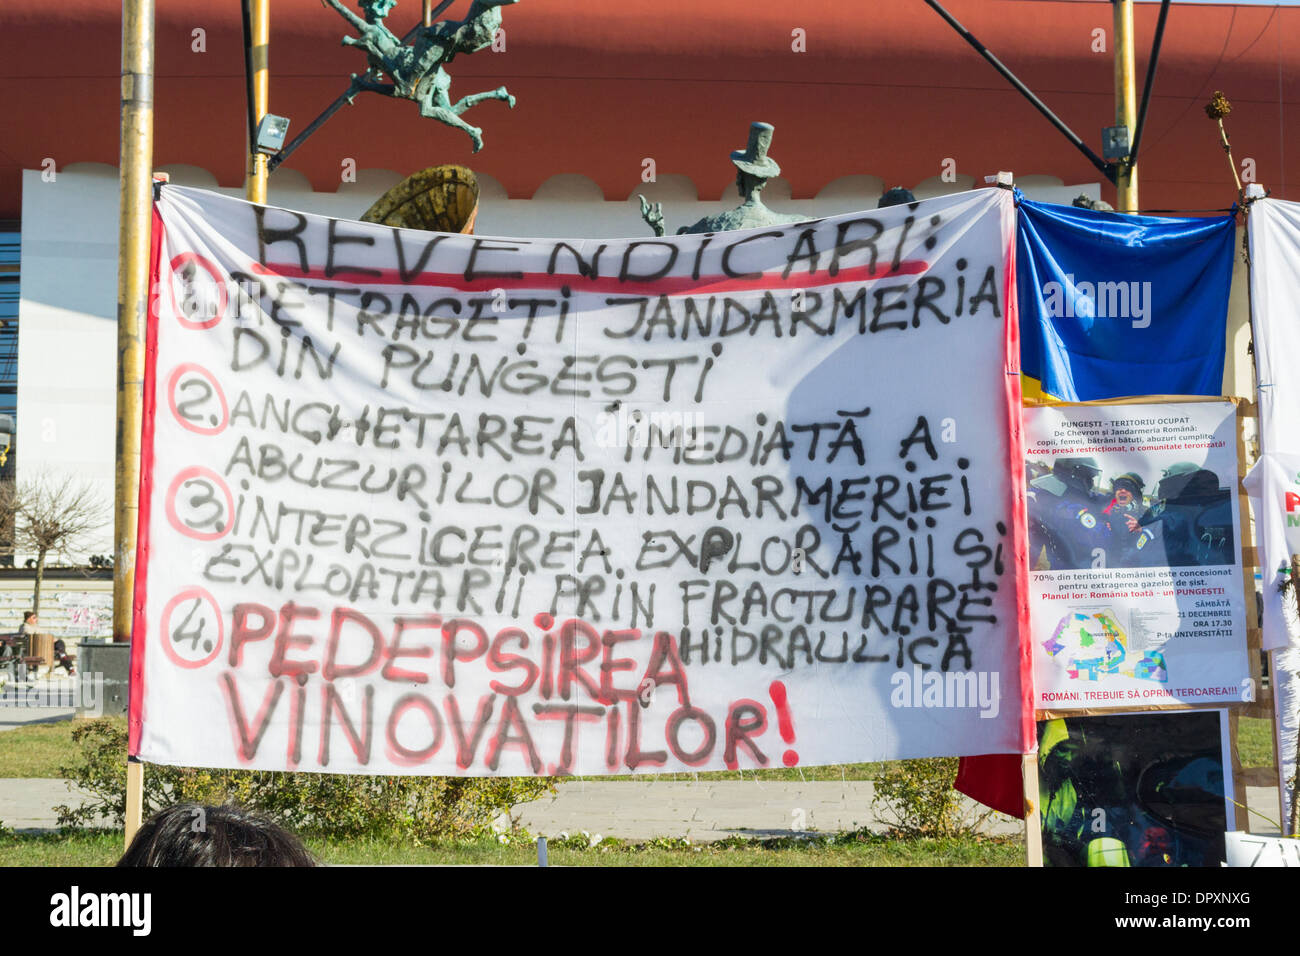 Anti-Fracking-Banner über den Rückzug der Bereitschaftspolizei und der Haltestelle der Schiefer-Exploration in Pungesti, einem kleinen rumänischen Dorf Stockfoto